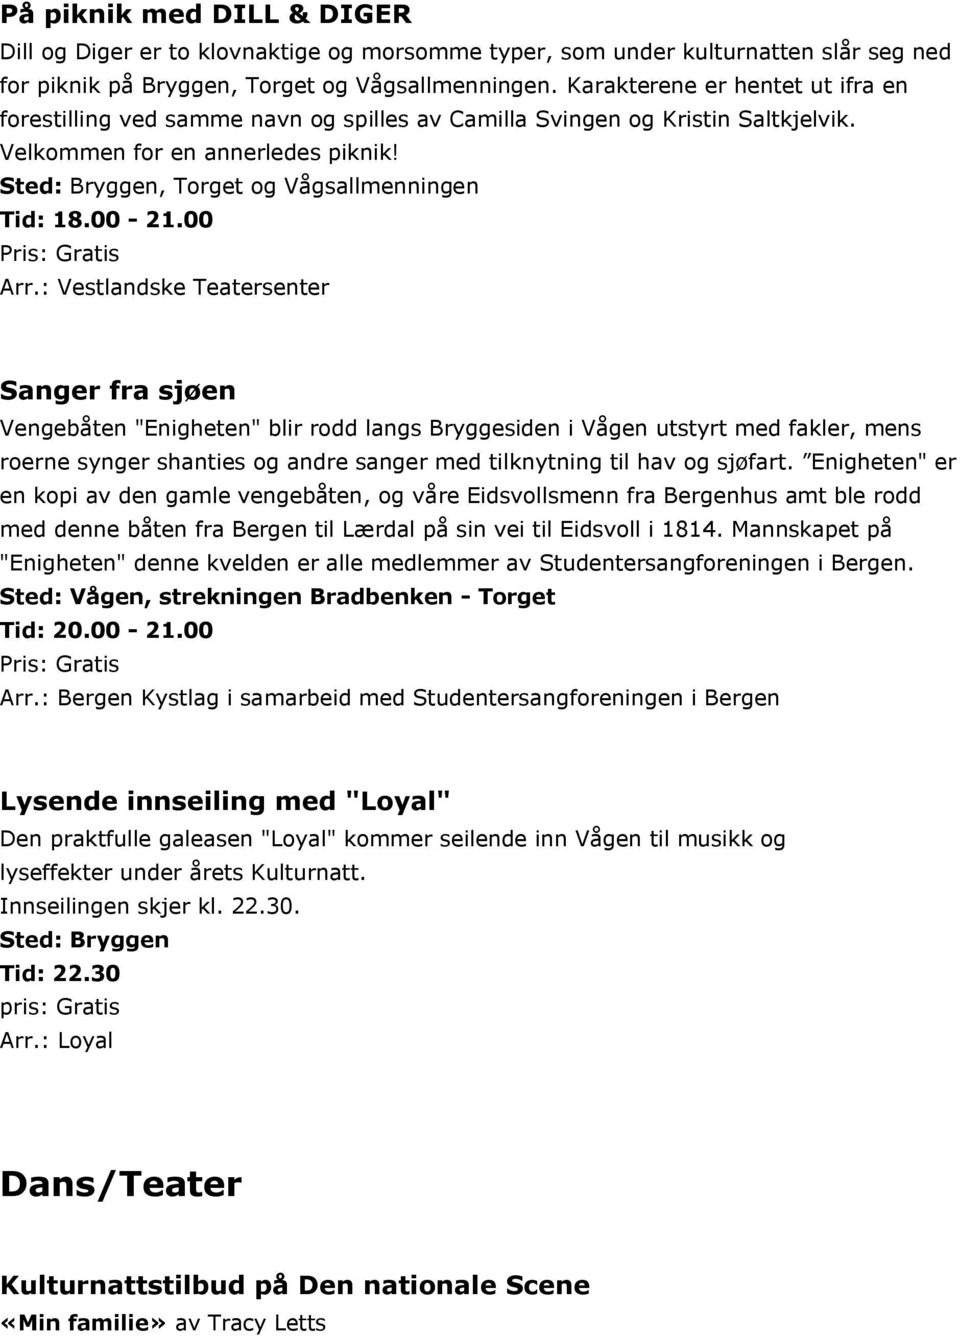 Sted: Bryggen, Torget og Vågsallmenningen Tid: 18.00-21.00 Arr.